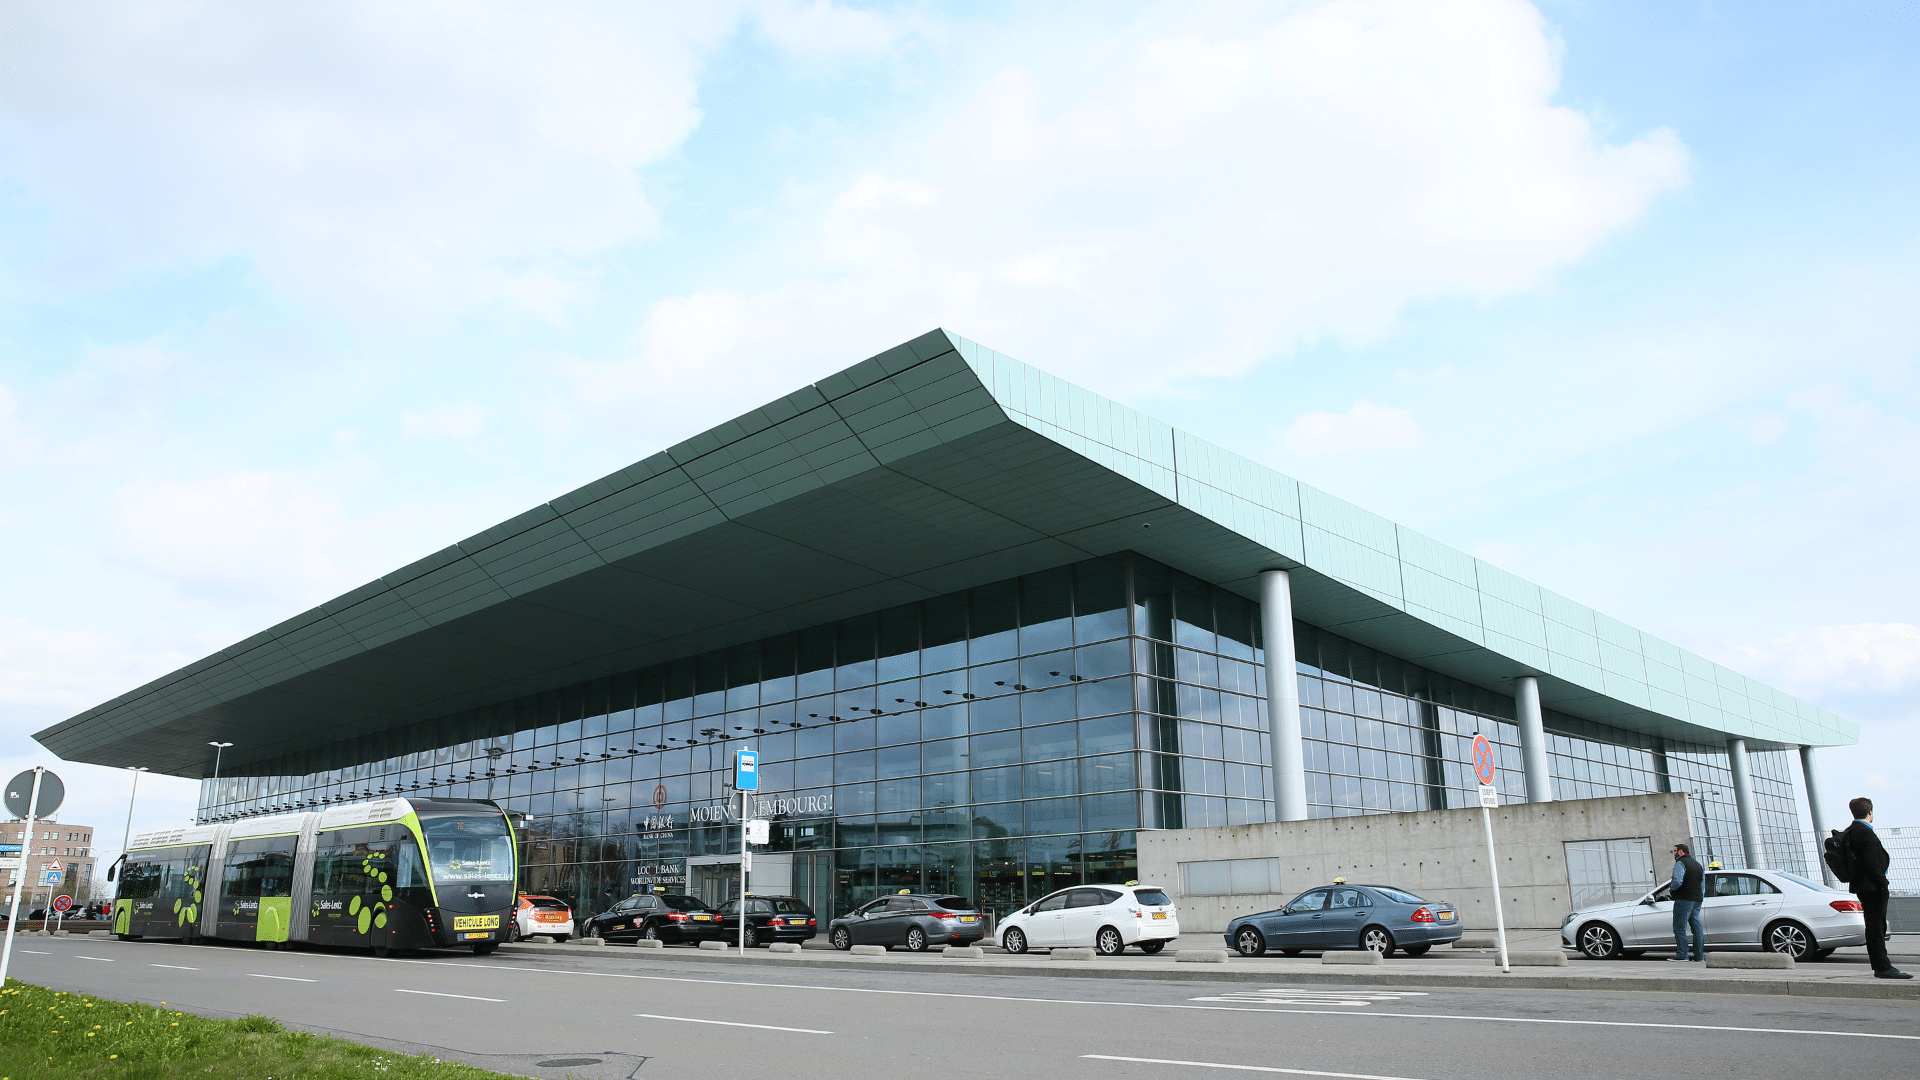 Luxemburg Airport